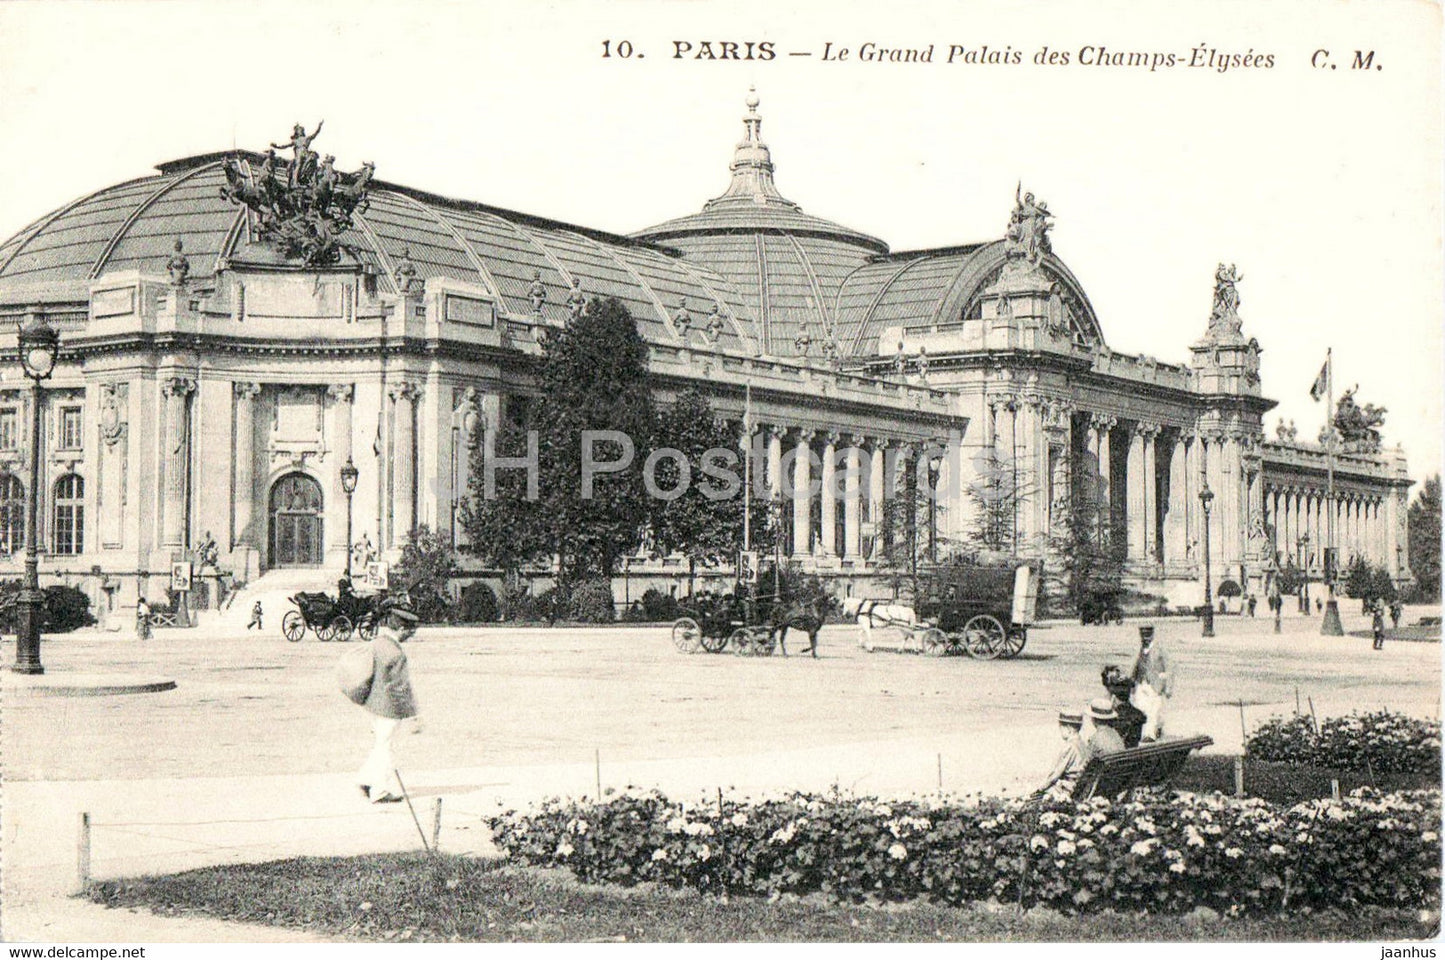 Paris - Le Grand Palais des Champs Elysees - 10 - old postcard - France - unused - JH Postcards